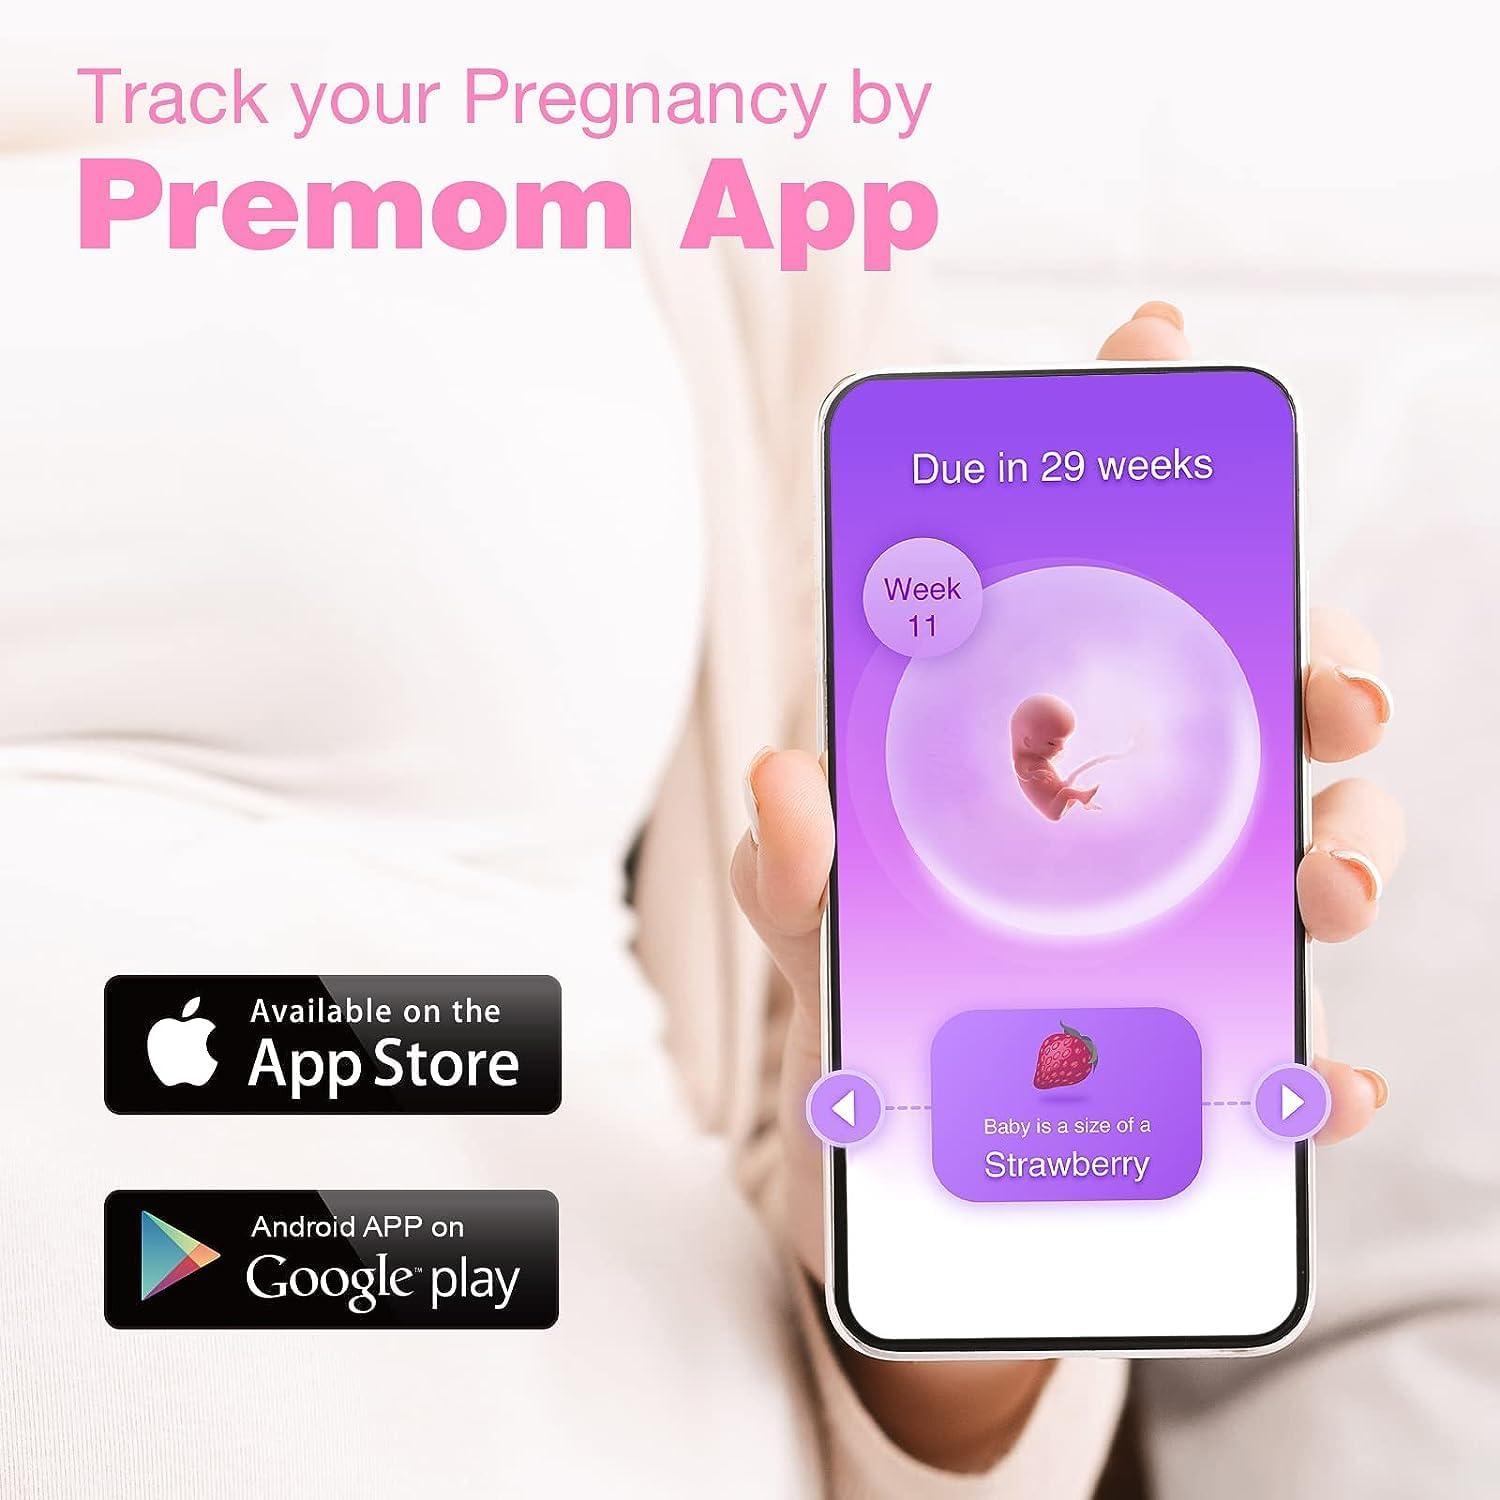 Test de Embarazo Easy@Home: 10 Pruebas de HCG 10 mIU/ml Utrasensibles para  detedcción de embarazo temperana - Desarrollado por Premom APP